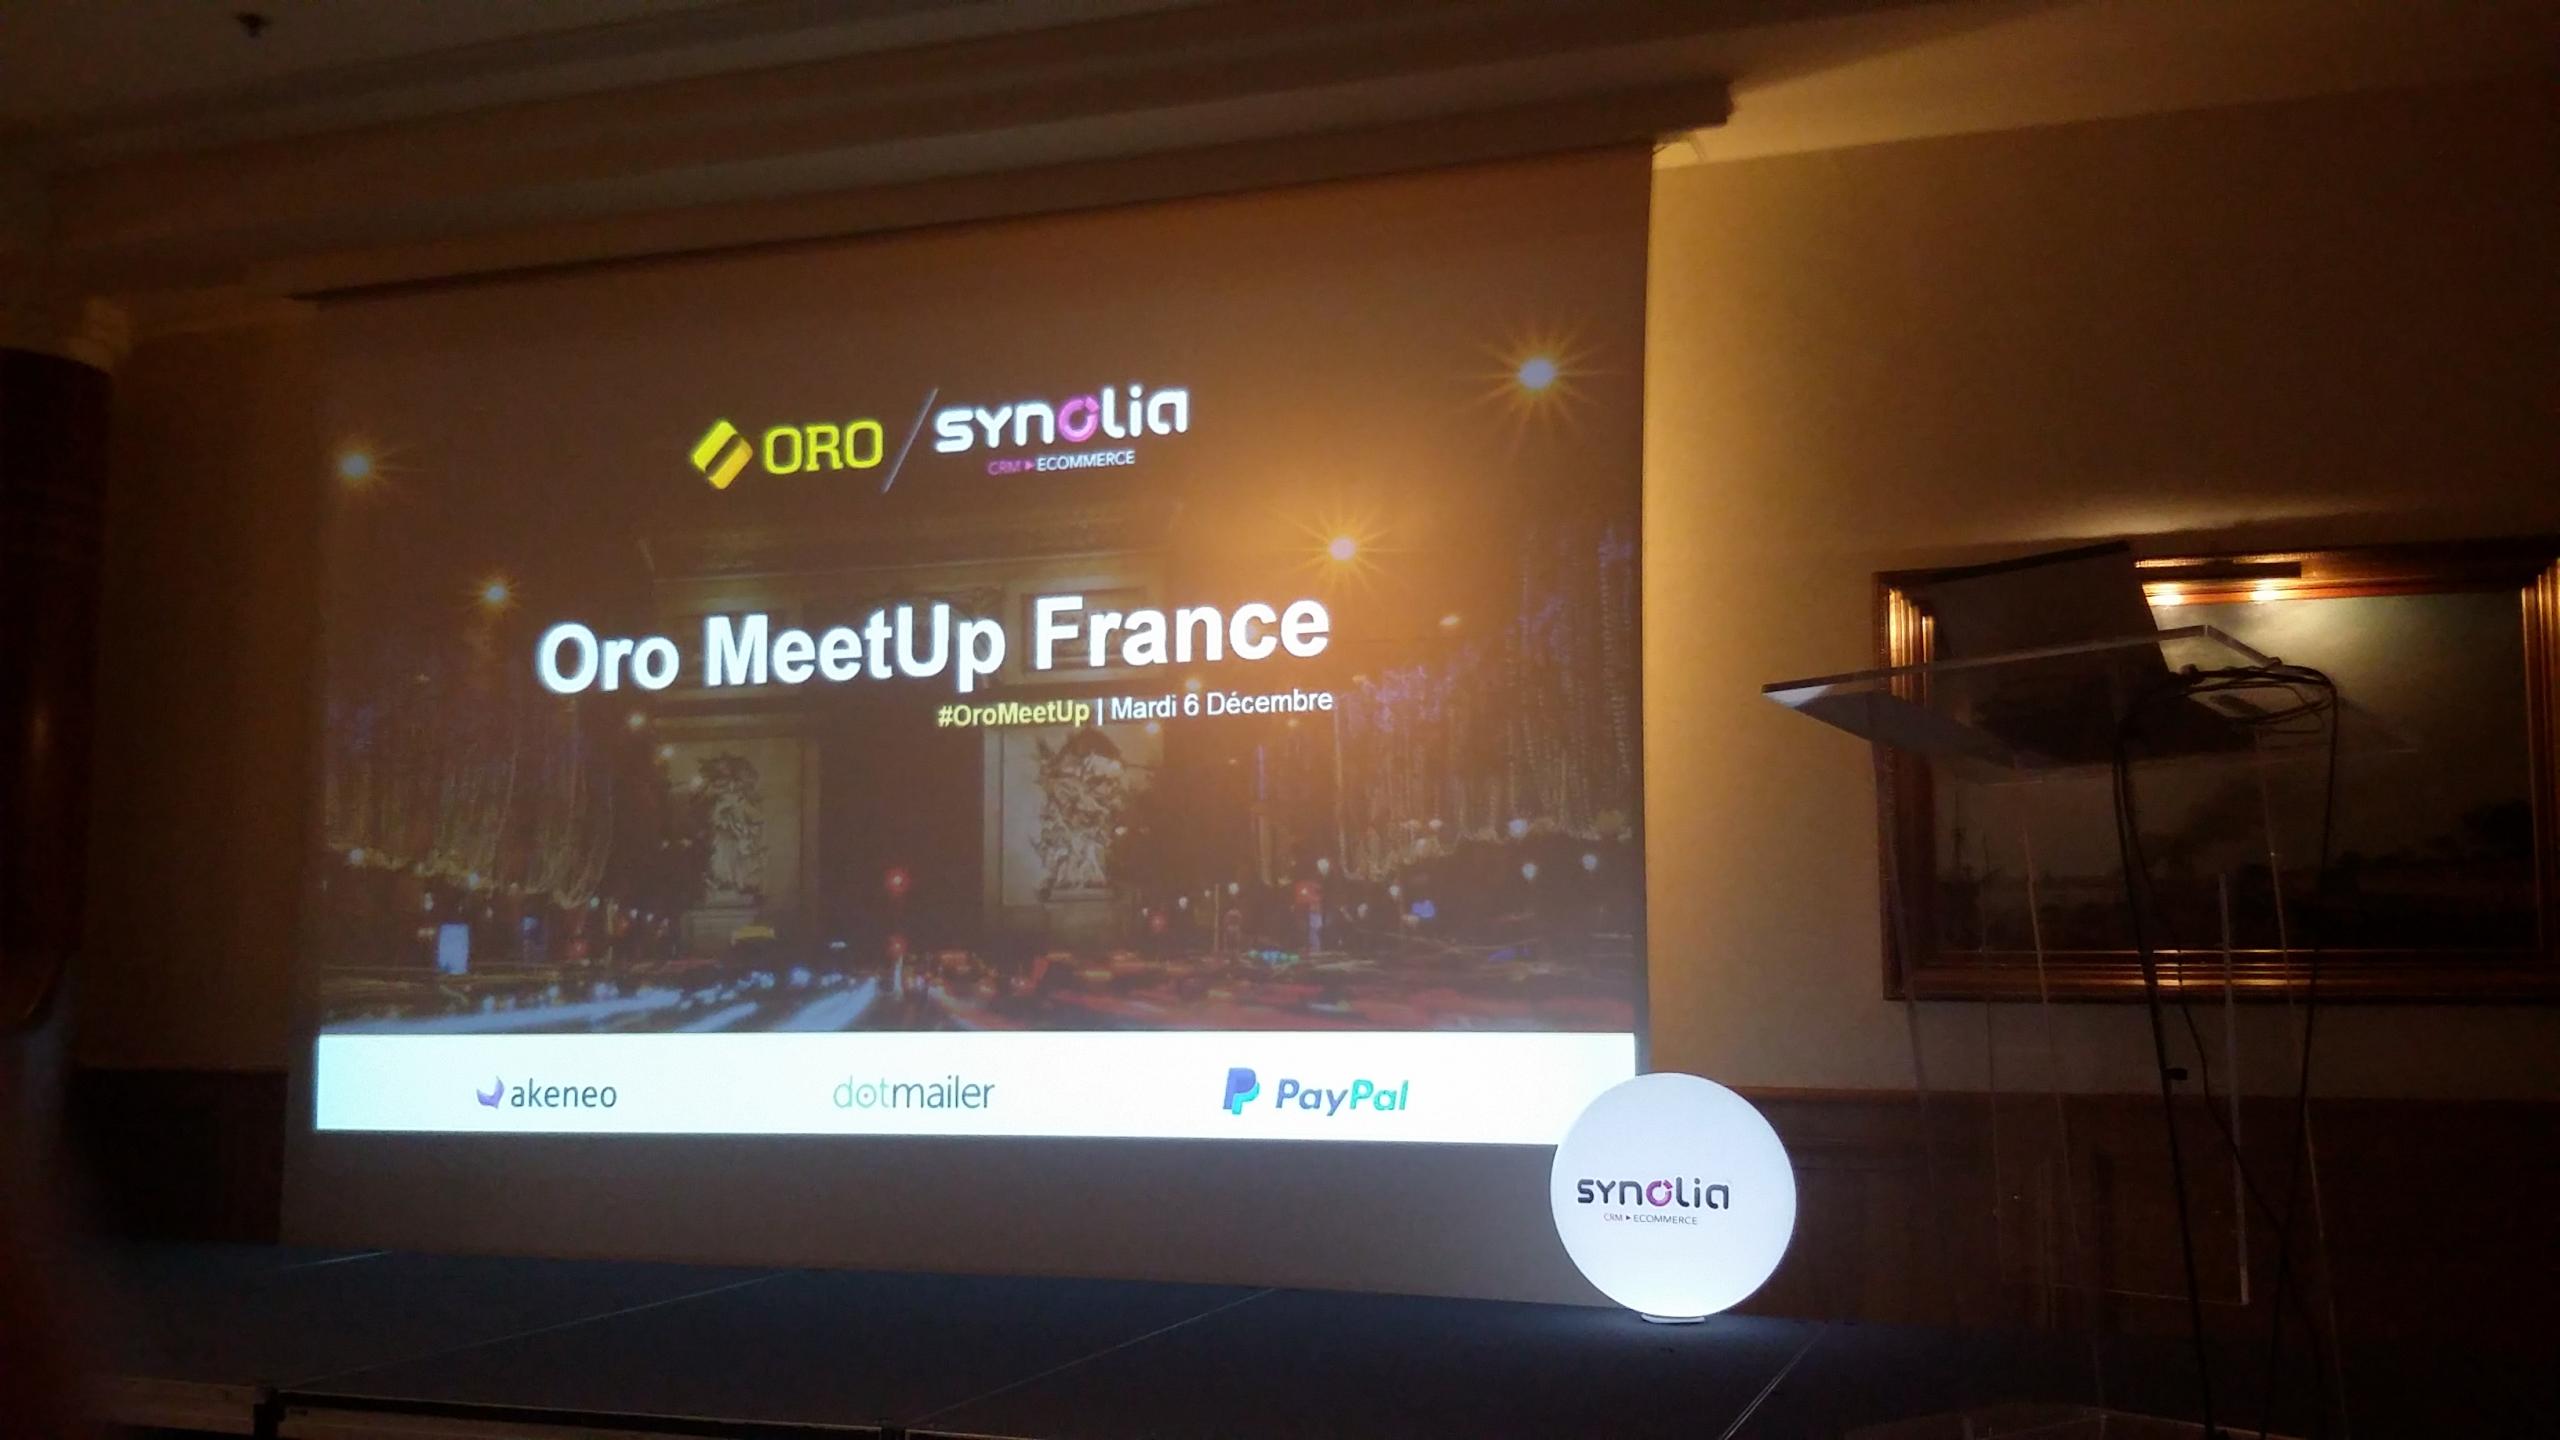 Het podium tijdens de Oro Meetup in Frankrijk. Op het podium hangt een scherm waar de eerste slide van een presentatie te zien is.